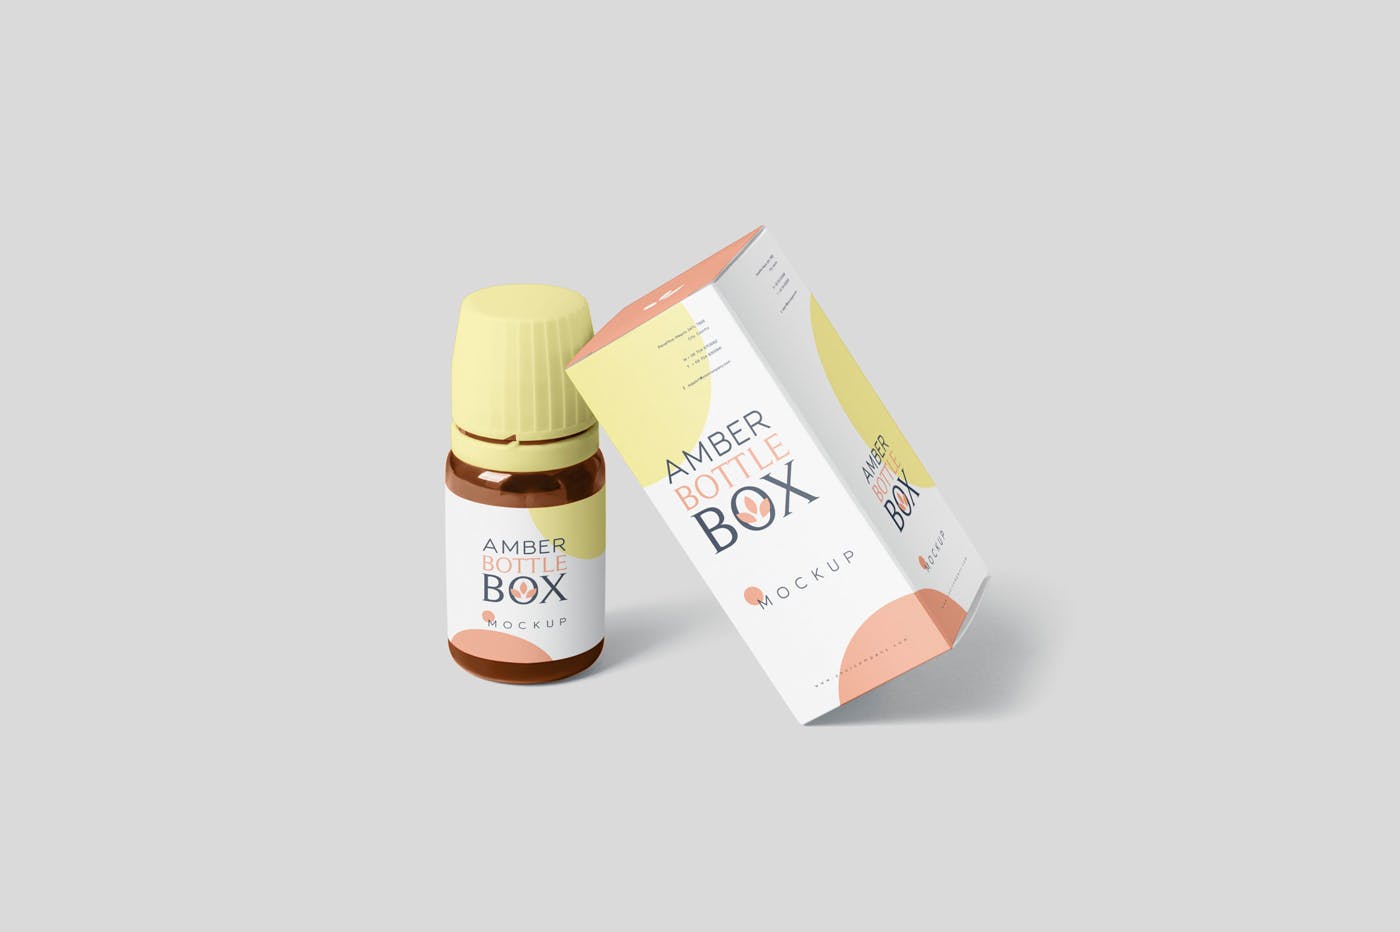 药物瓶&包装纸盒设计图大洋岛精选模板 Amber Bottle Box Mockup Set插图4